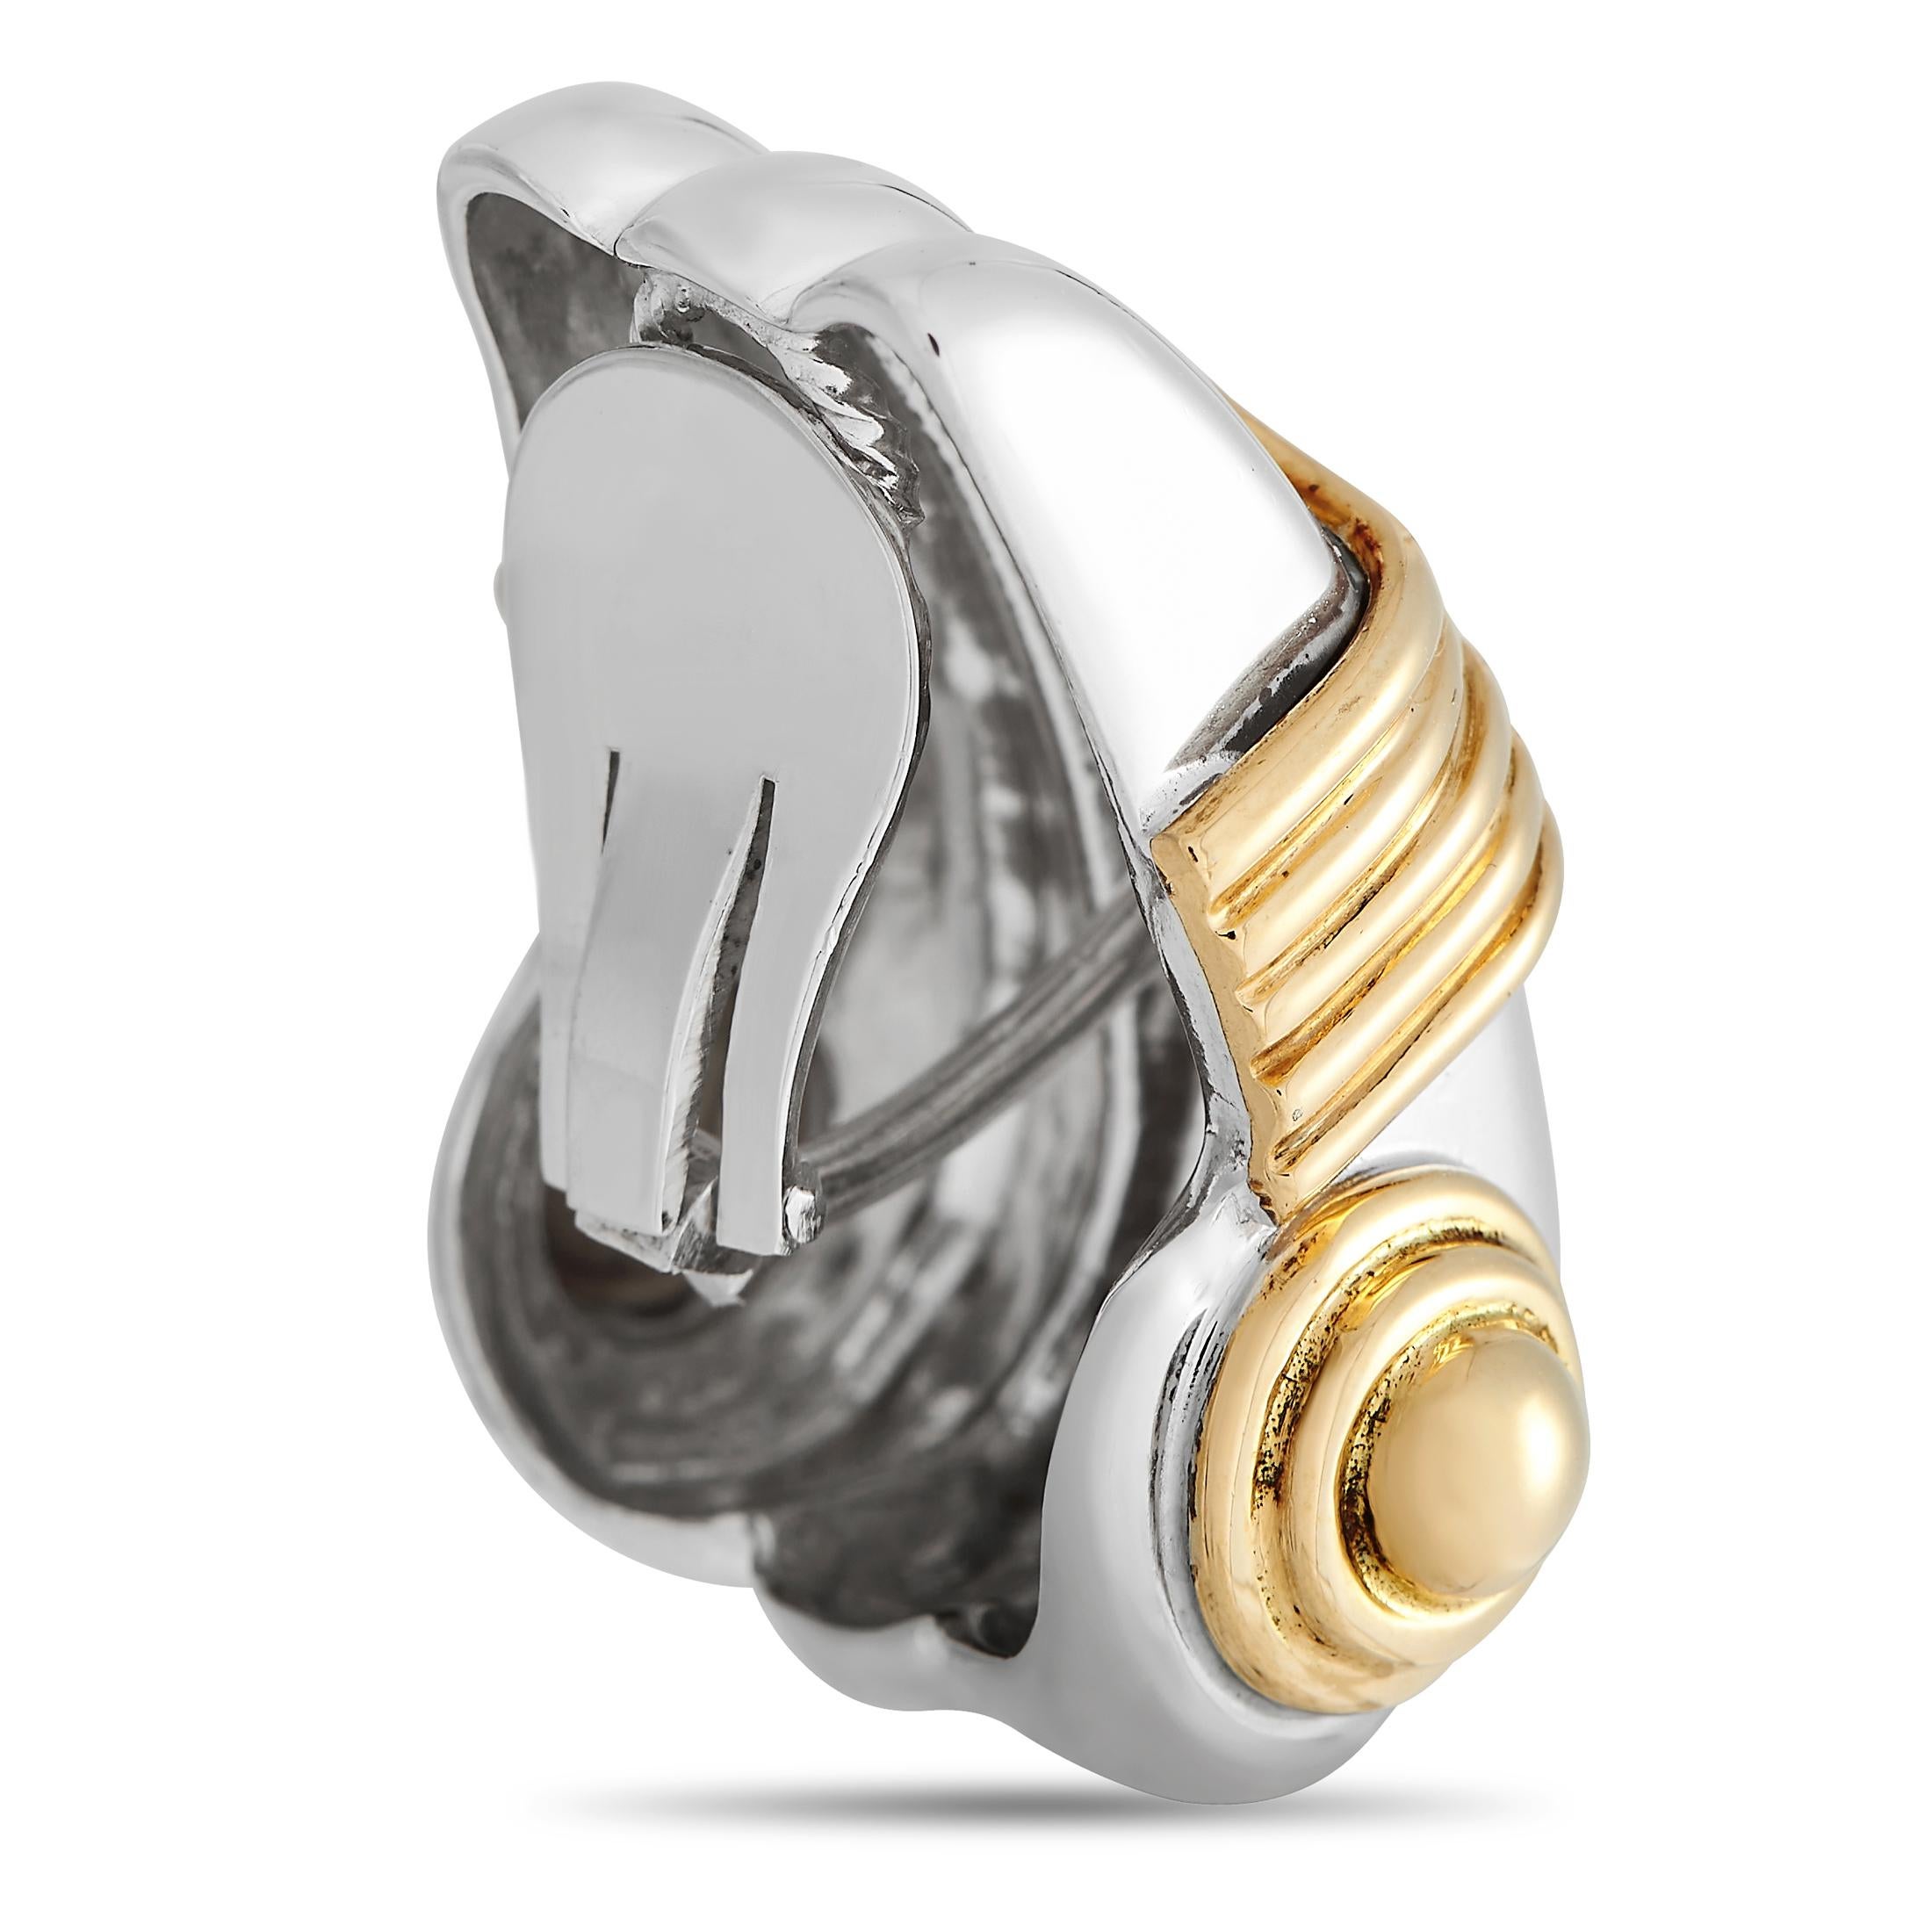 Diese sorgfältig handgefertigten Zolotas-Ohrringe, die die Größe des antiken Griechenlands darstellen, fallen durch ihr selbstbewusstes Design und ihre exquisite Handwerkskunst auf. Die Clip-Ohrringe sind tief gerillt und hochglanzpoliert. Jeder